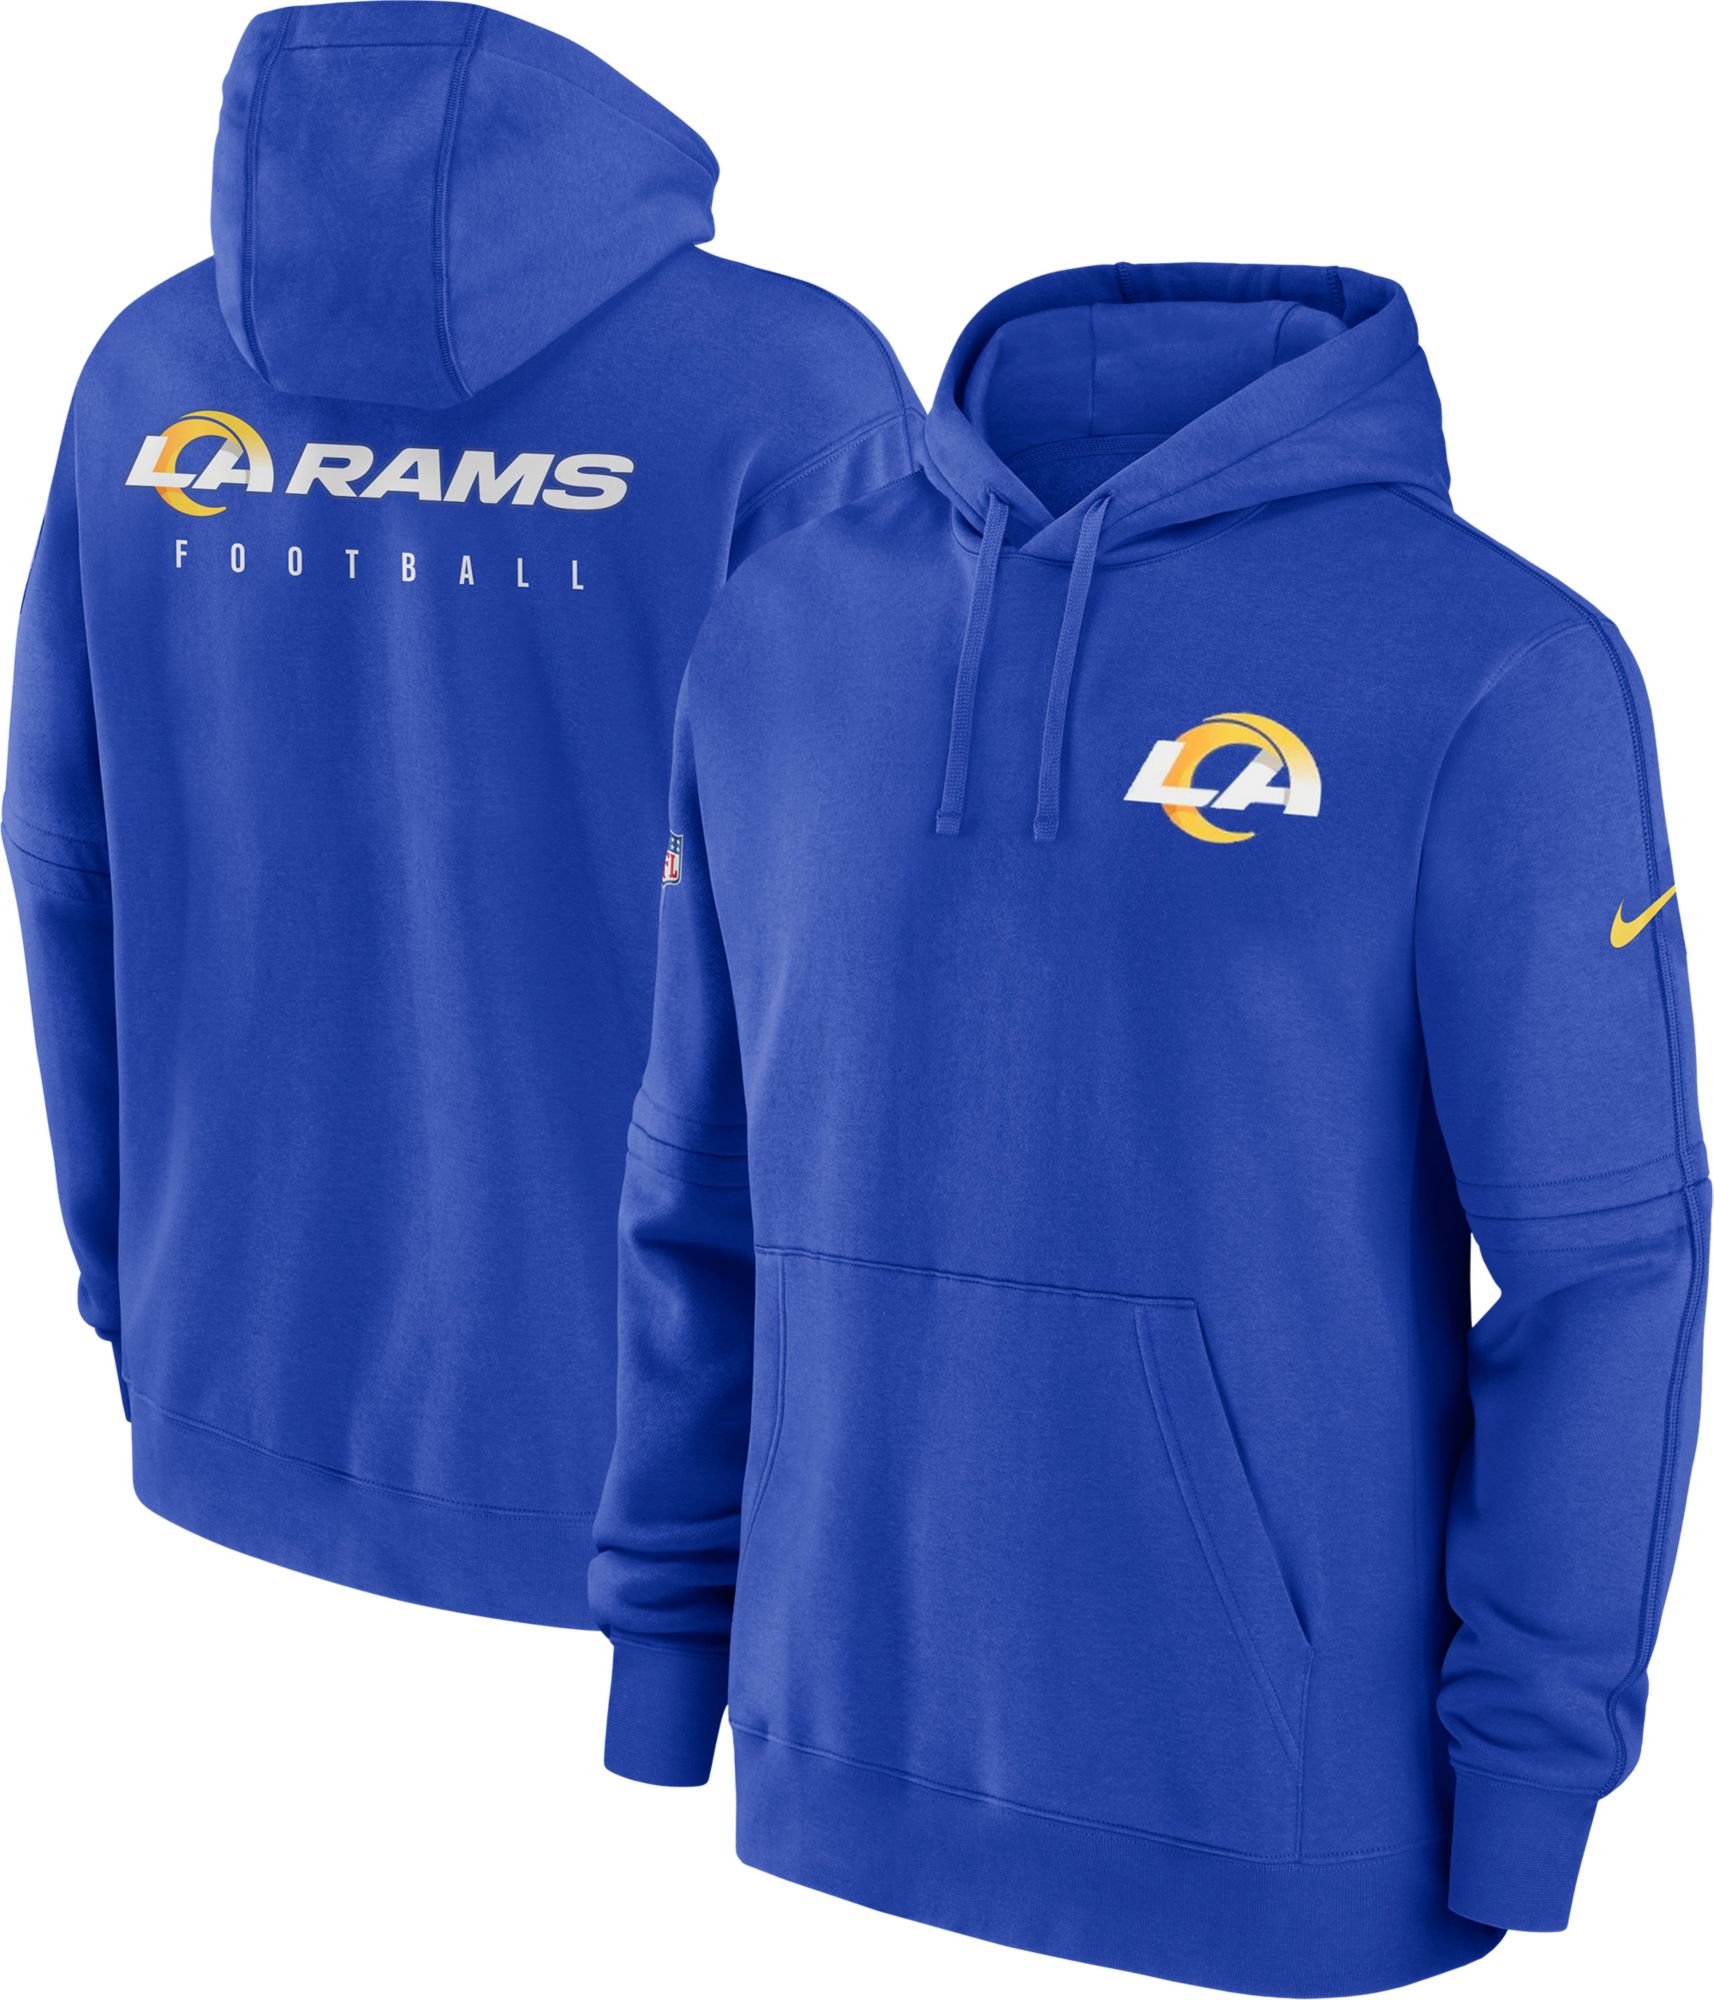 Los Angeles Rams sideline gear jersey